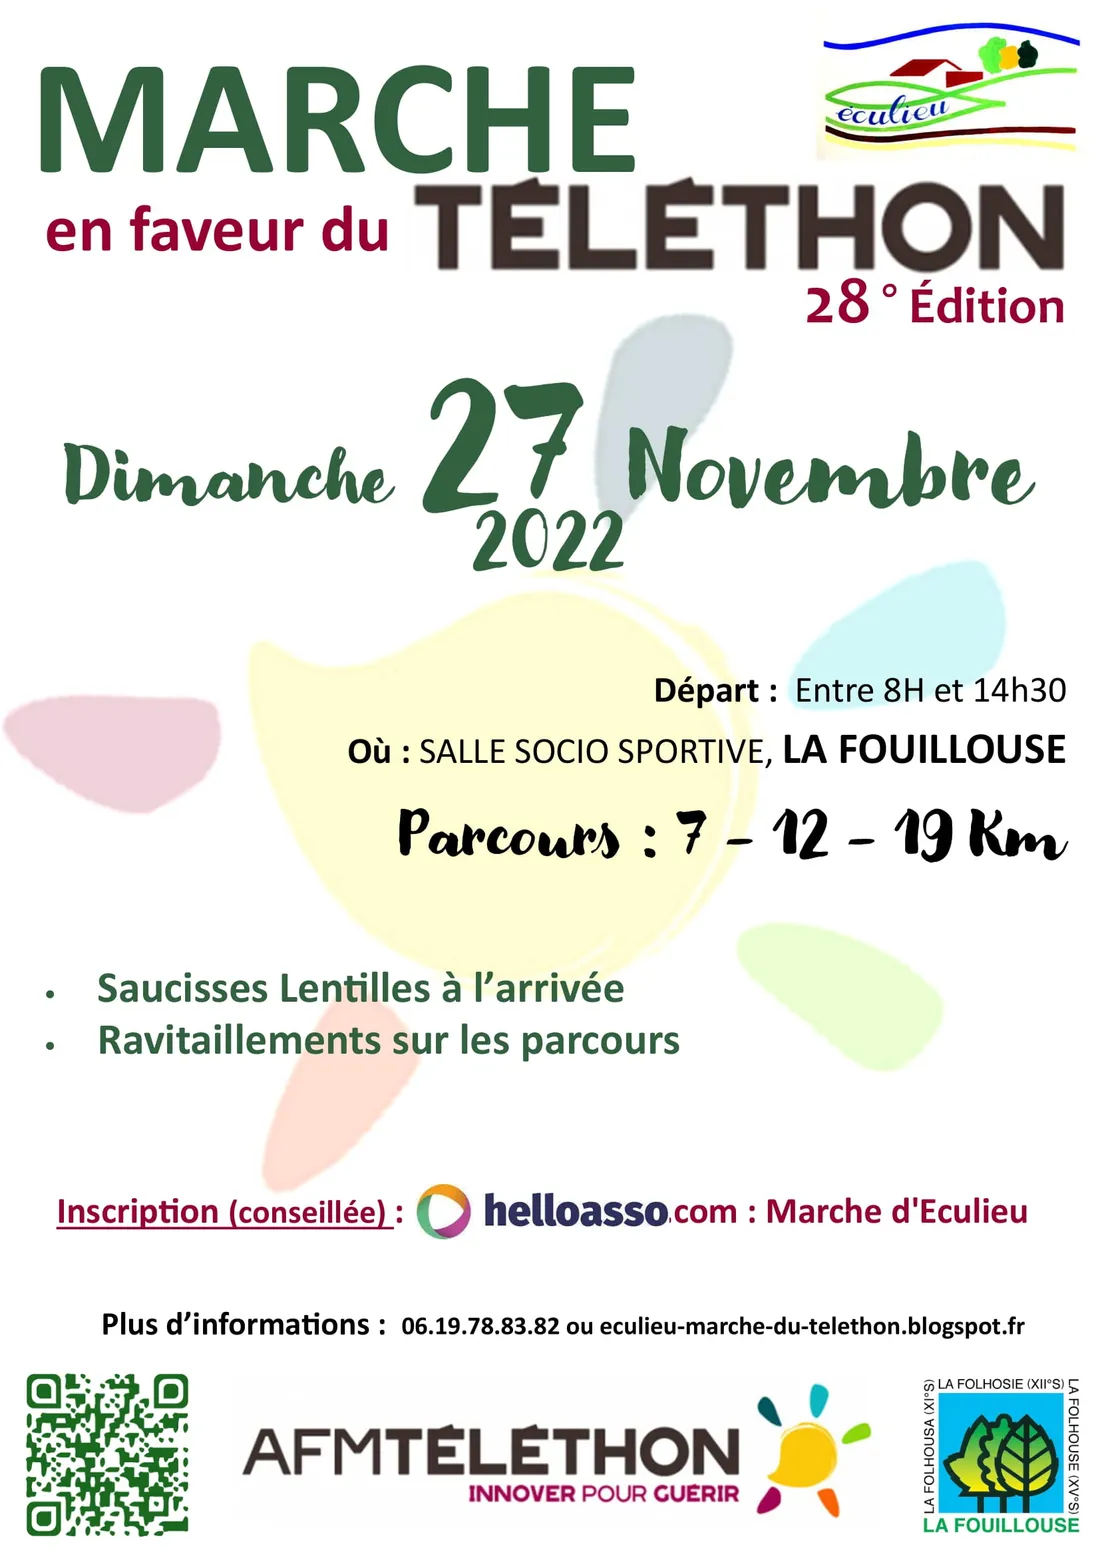 Marche en faveur du Téléthon à La Fouillouse